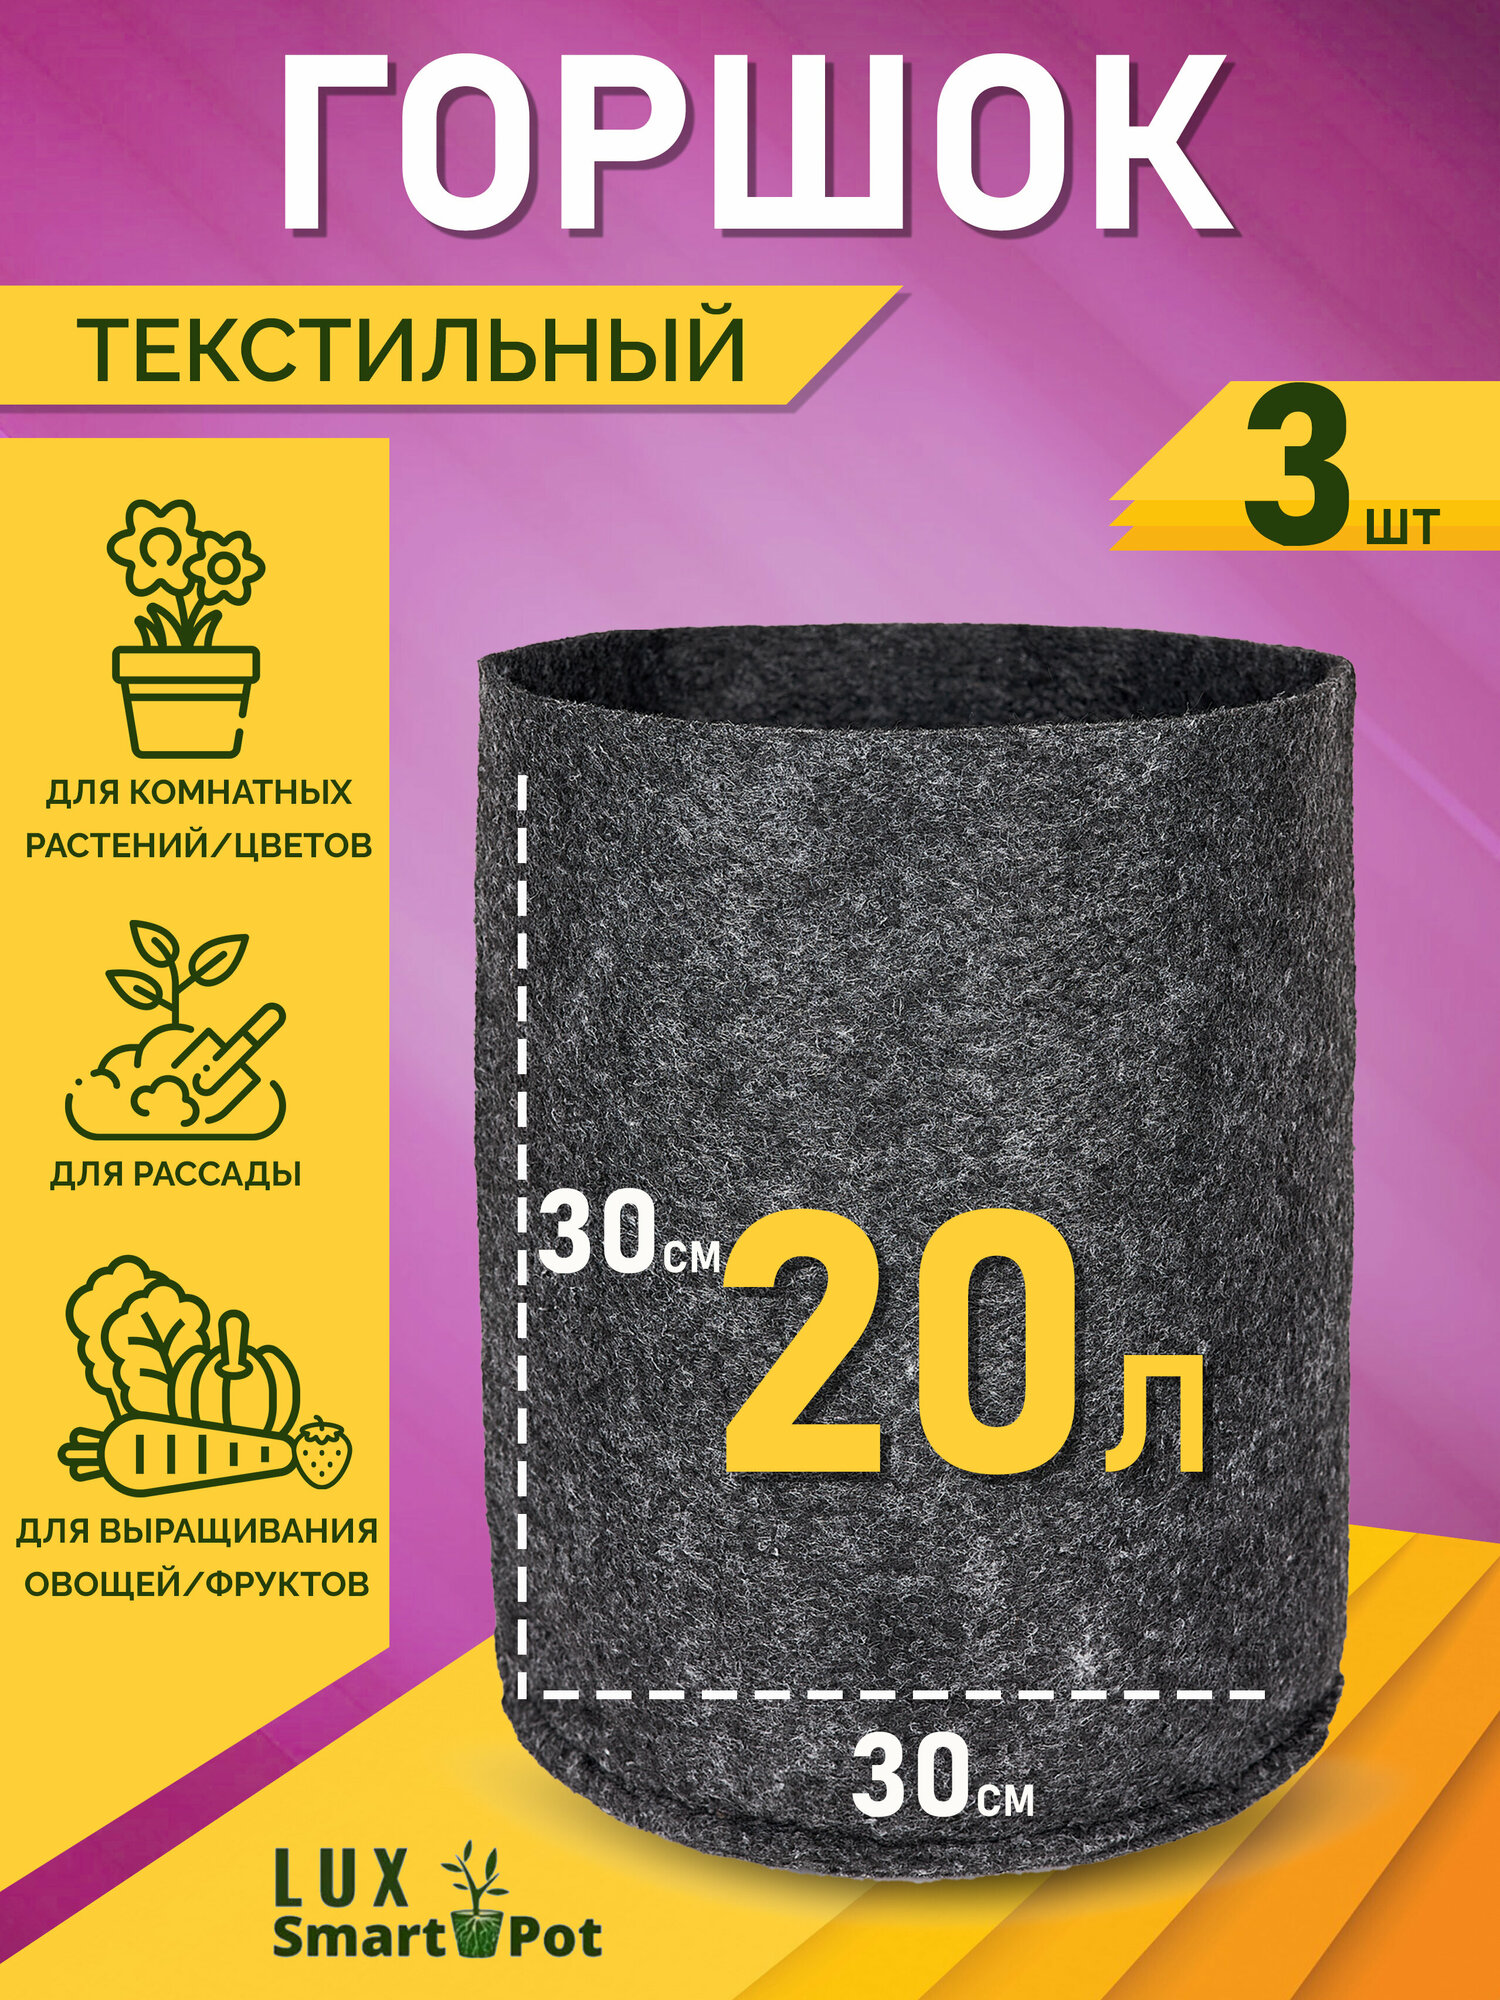 Горшок текстильный для рассады, растений, цветов SmartPot Lux - 20 л 3 шт.